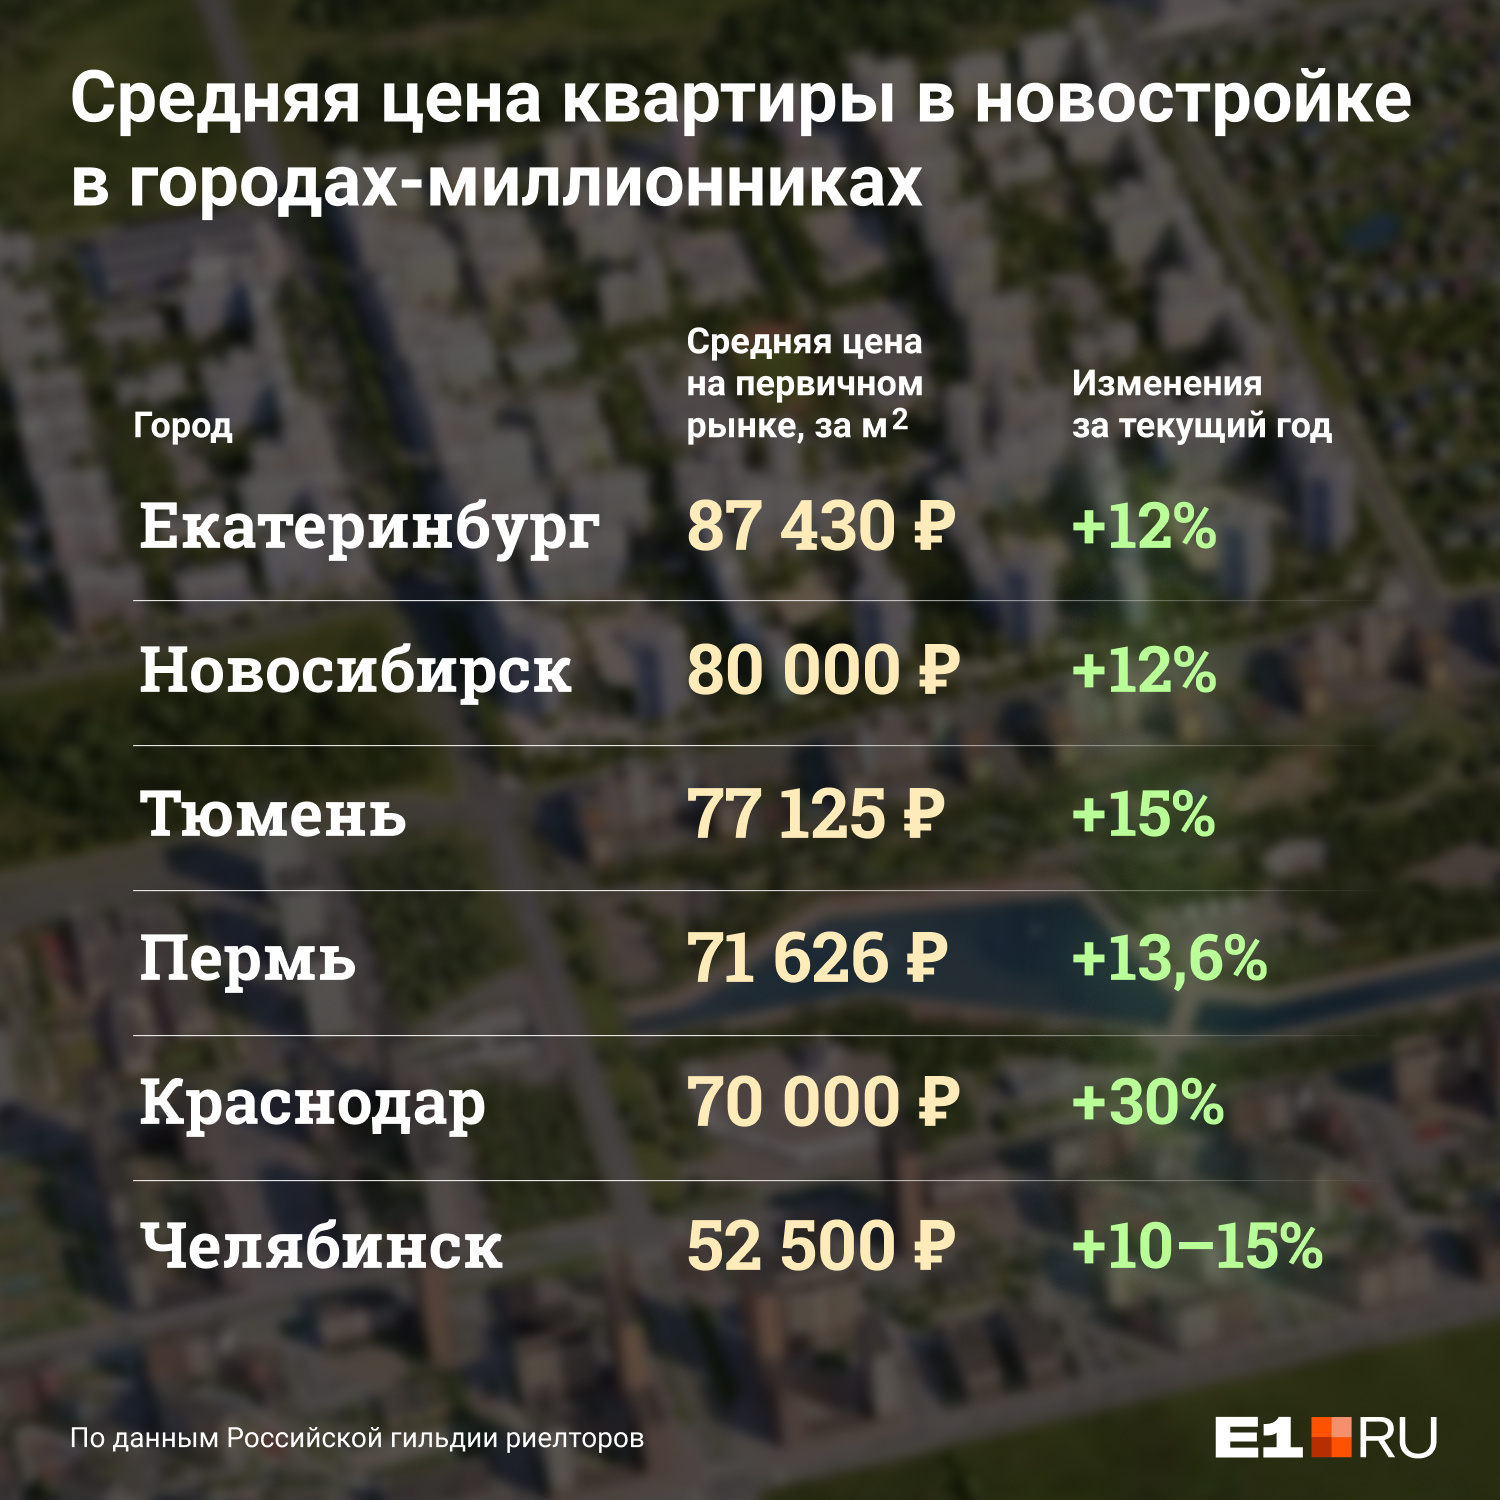 Средняя цена <nobr class="_">кв. метра</nobr> в новостройке в Екатеринбурге составляет более <nobr class="_">87 тыс. руб.</nobr> 